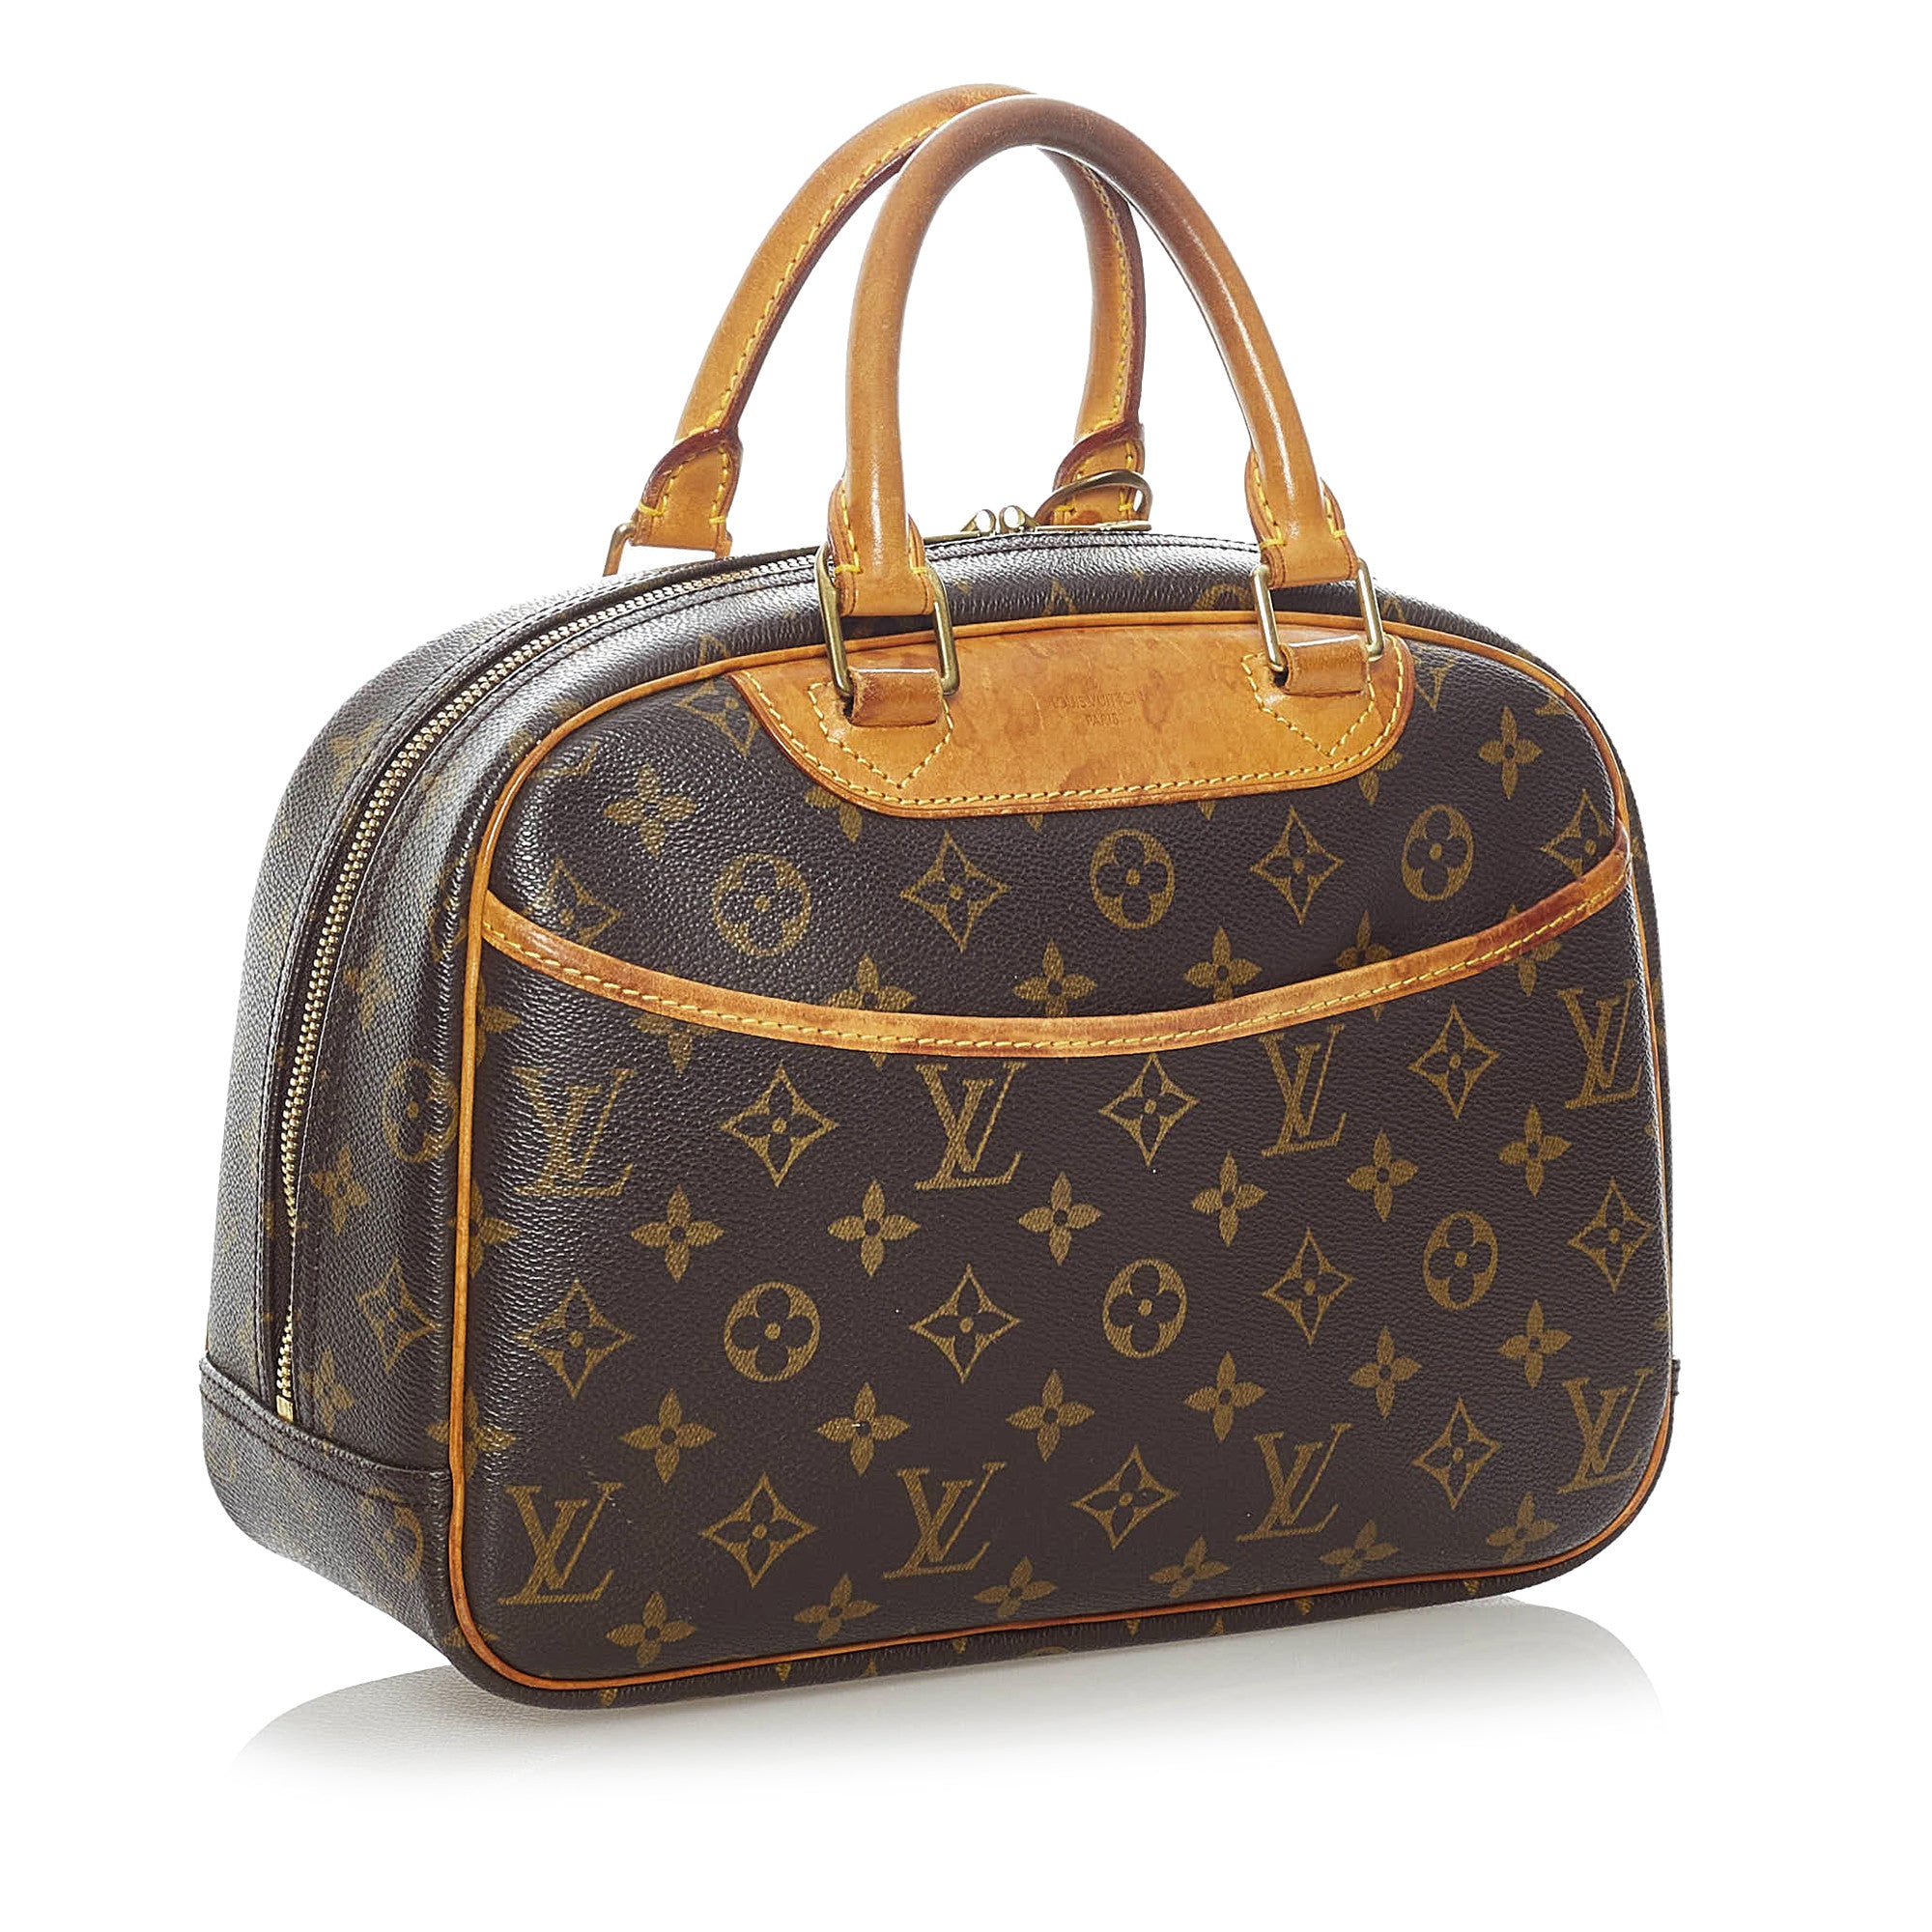 Sold at Auction: Louis Vuitton, LOUIS VUITTON MONOGRAM TROUVILLE &  DEAUVILLE BAGS